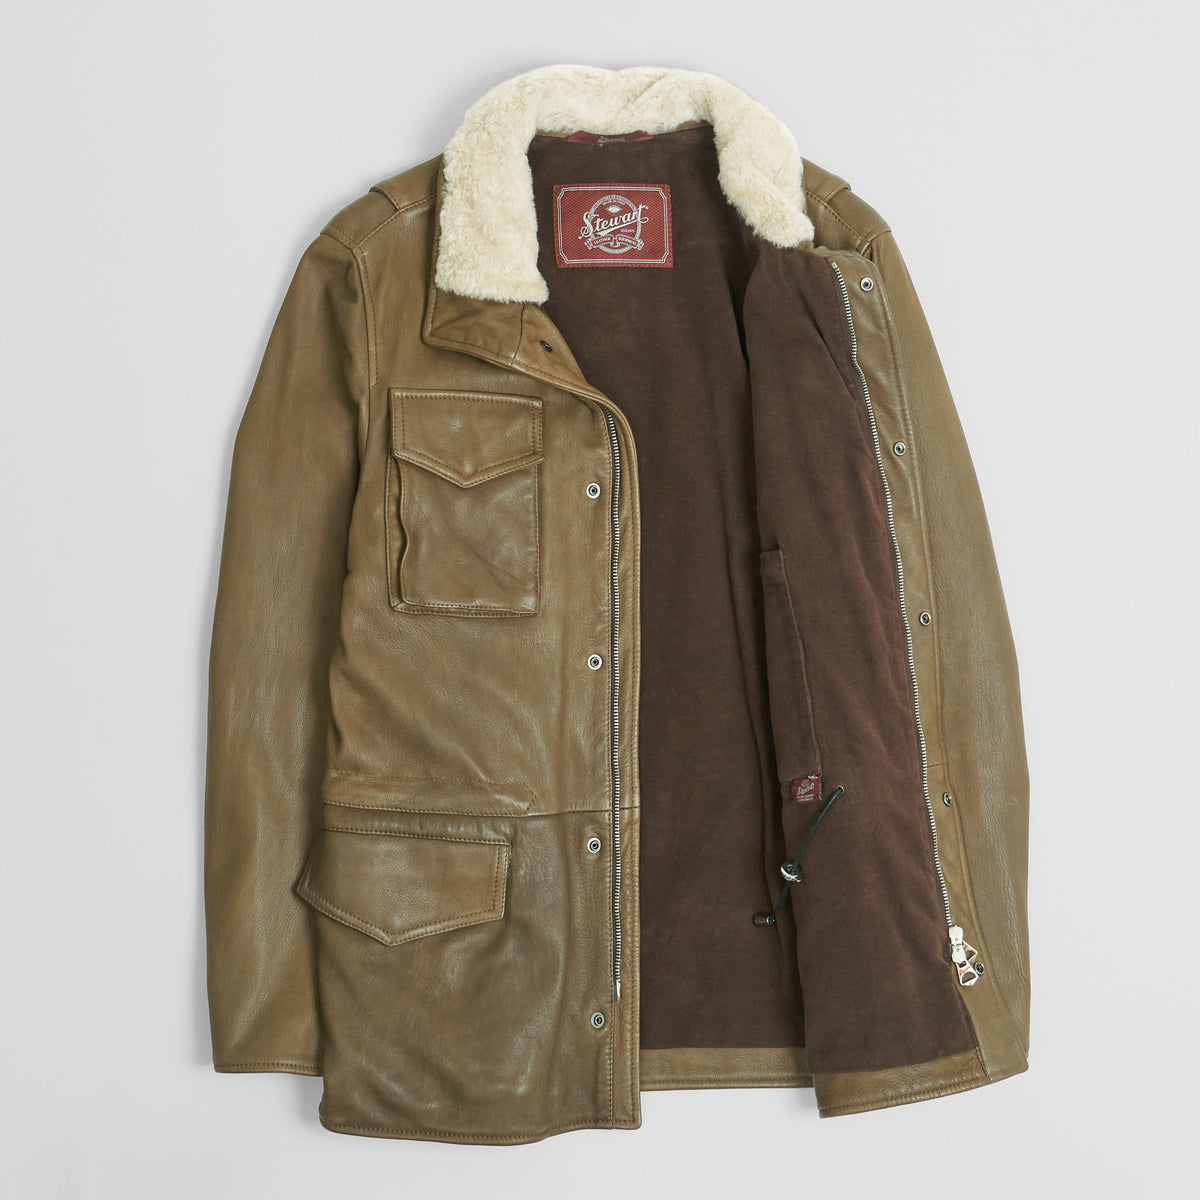 Stewart Leather M-65 Field Jacket